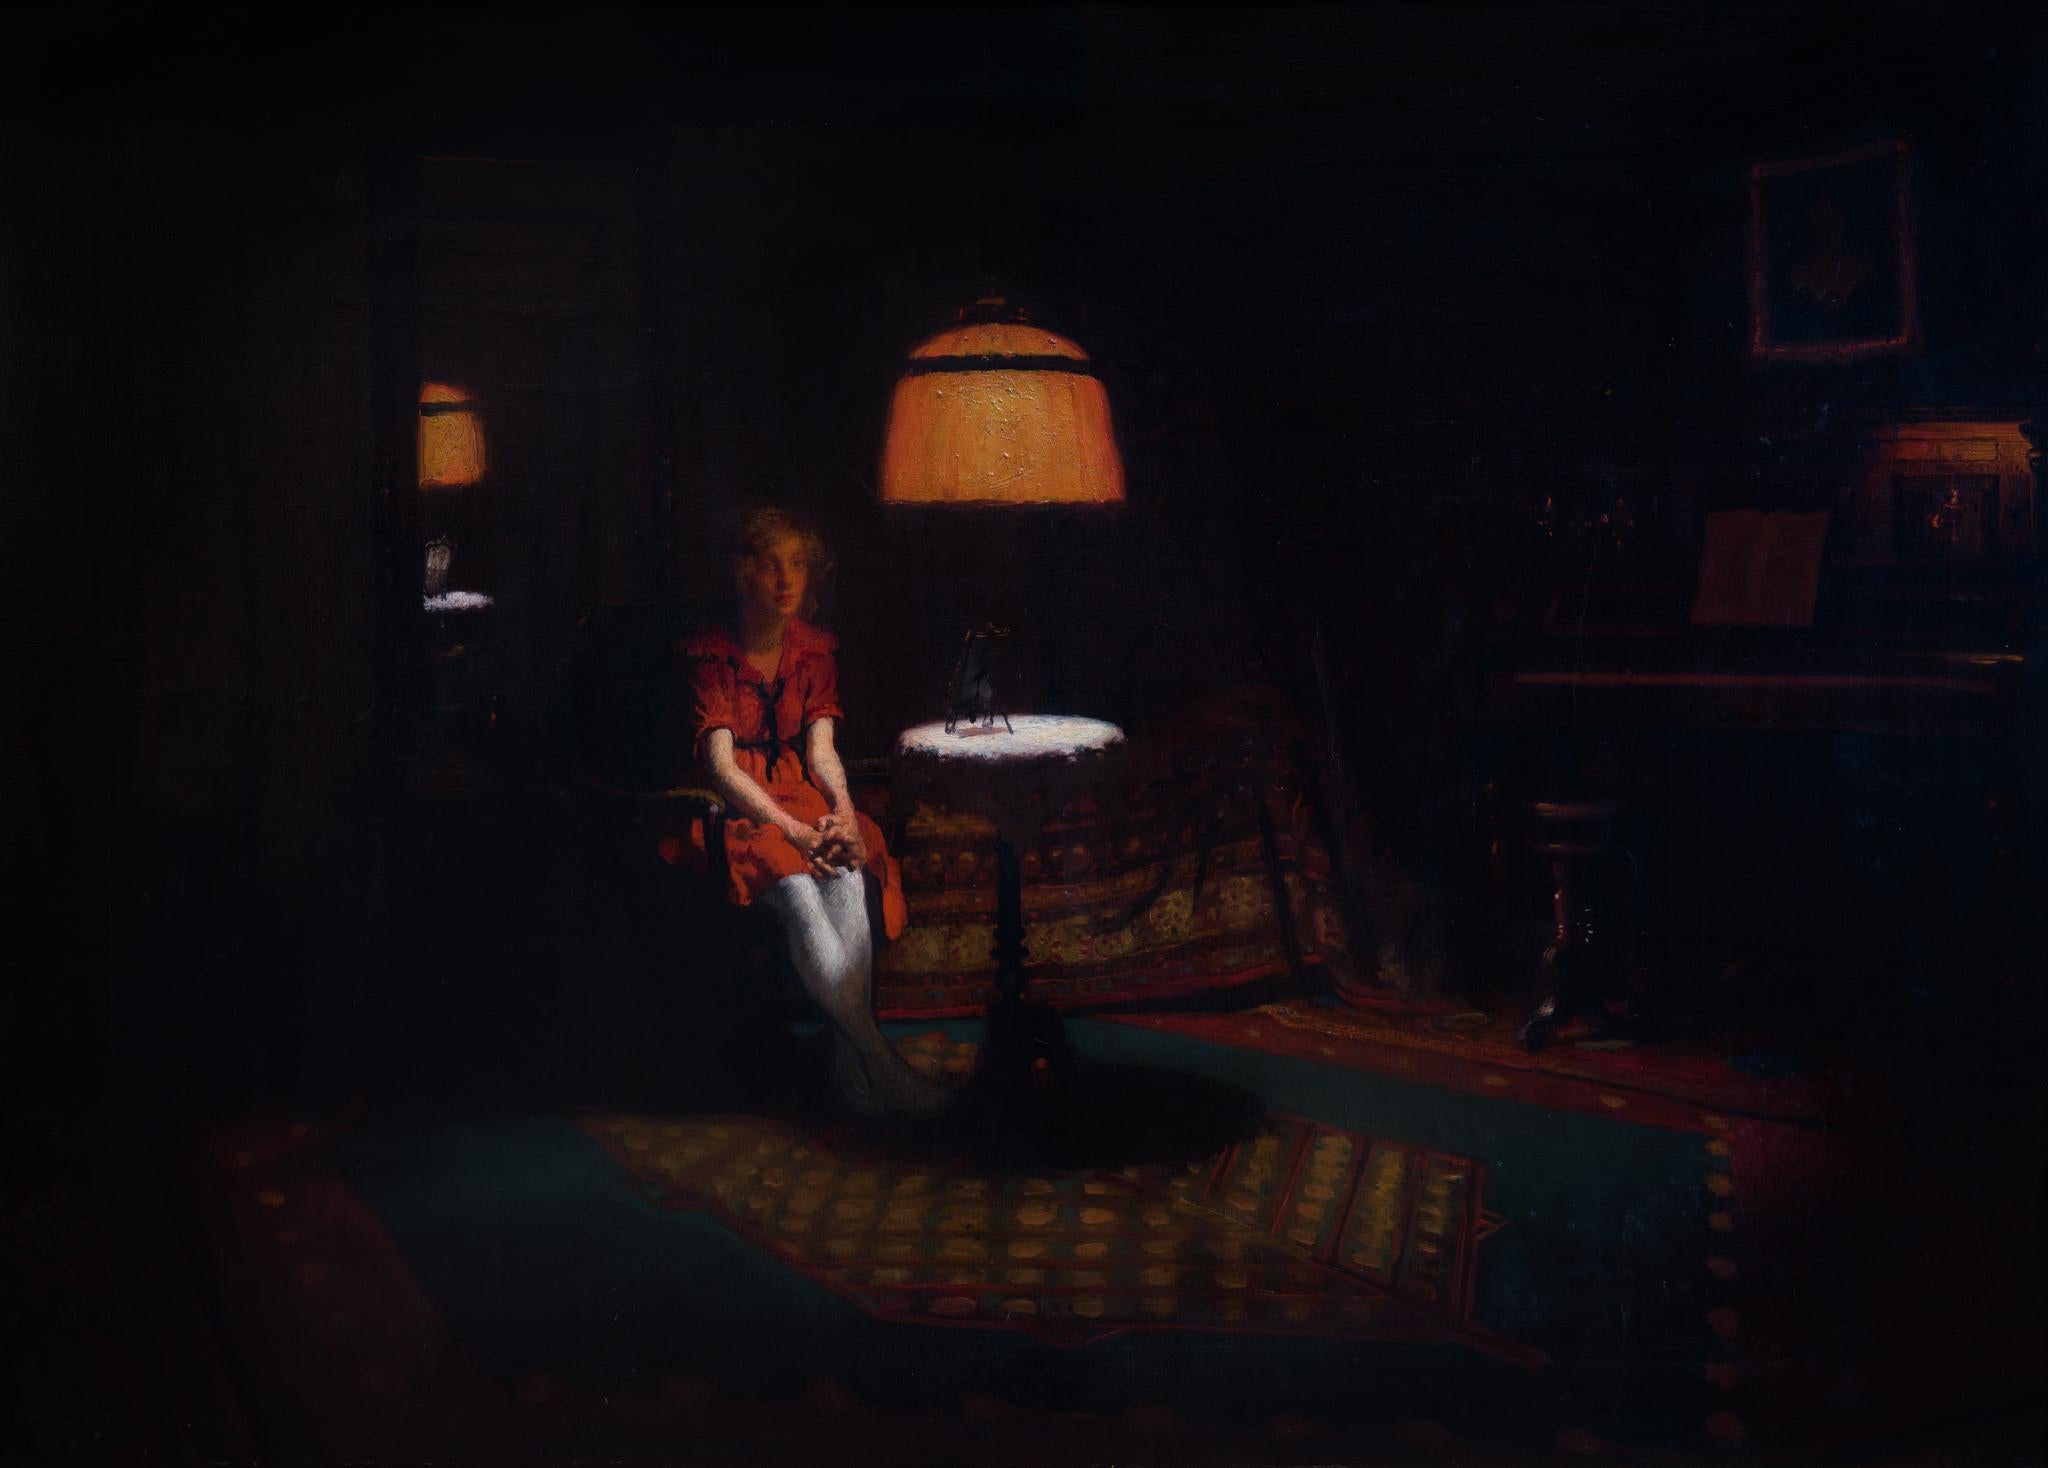 Das Gemälde zeigt ein junges Mädchen, das auf einem Stuhl in einem schwach beleuchteten Raum sitzt, der durch den sanften Schein einer orangefarbenen Deckenlampe erhellt wird. Dieses Gemälde fängt die Essenz des Genres der Kerzenlichtkunst ein, das